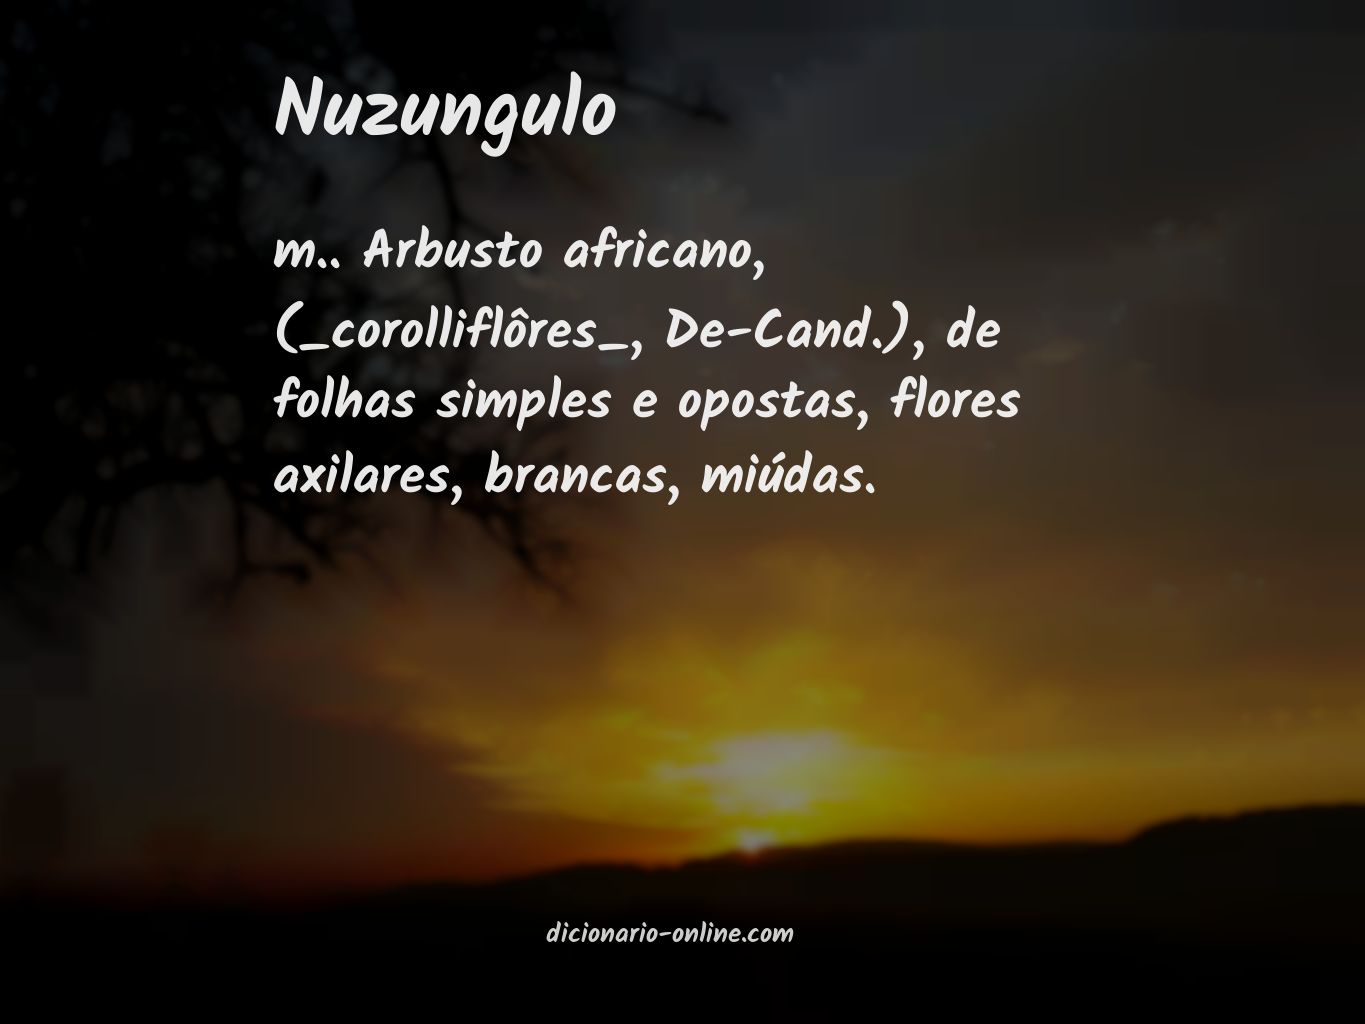 Significado de nuzungulo